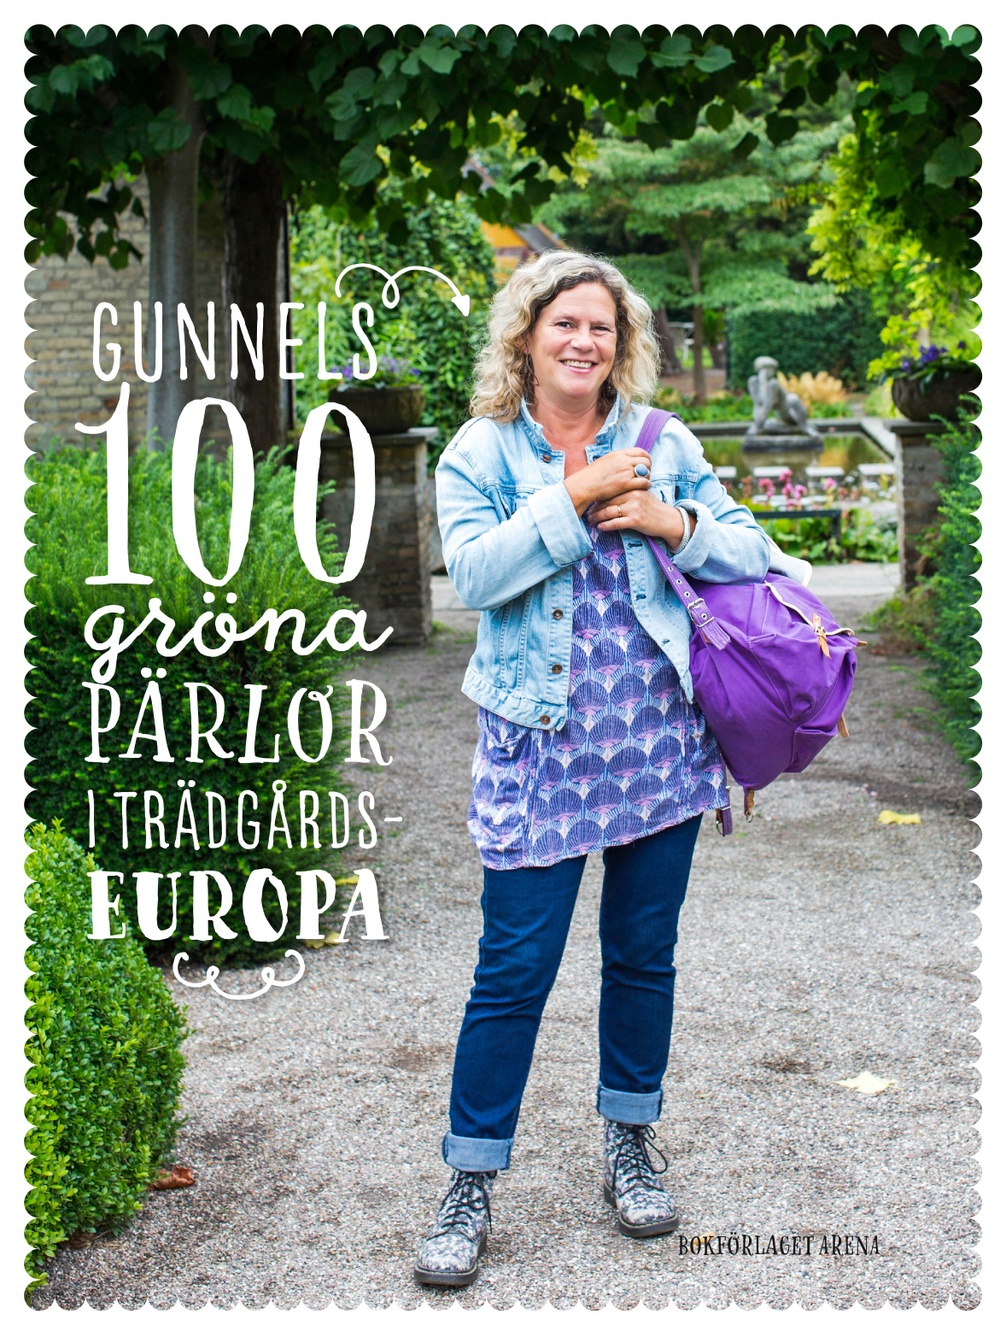 Bokomslag: Gunnels 100 gröna pärlor i trädgårdseuropa